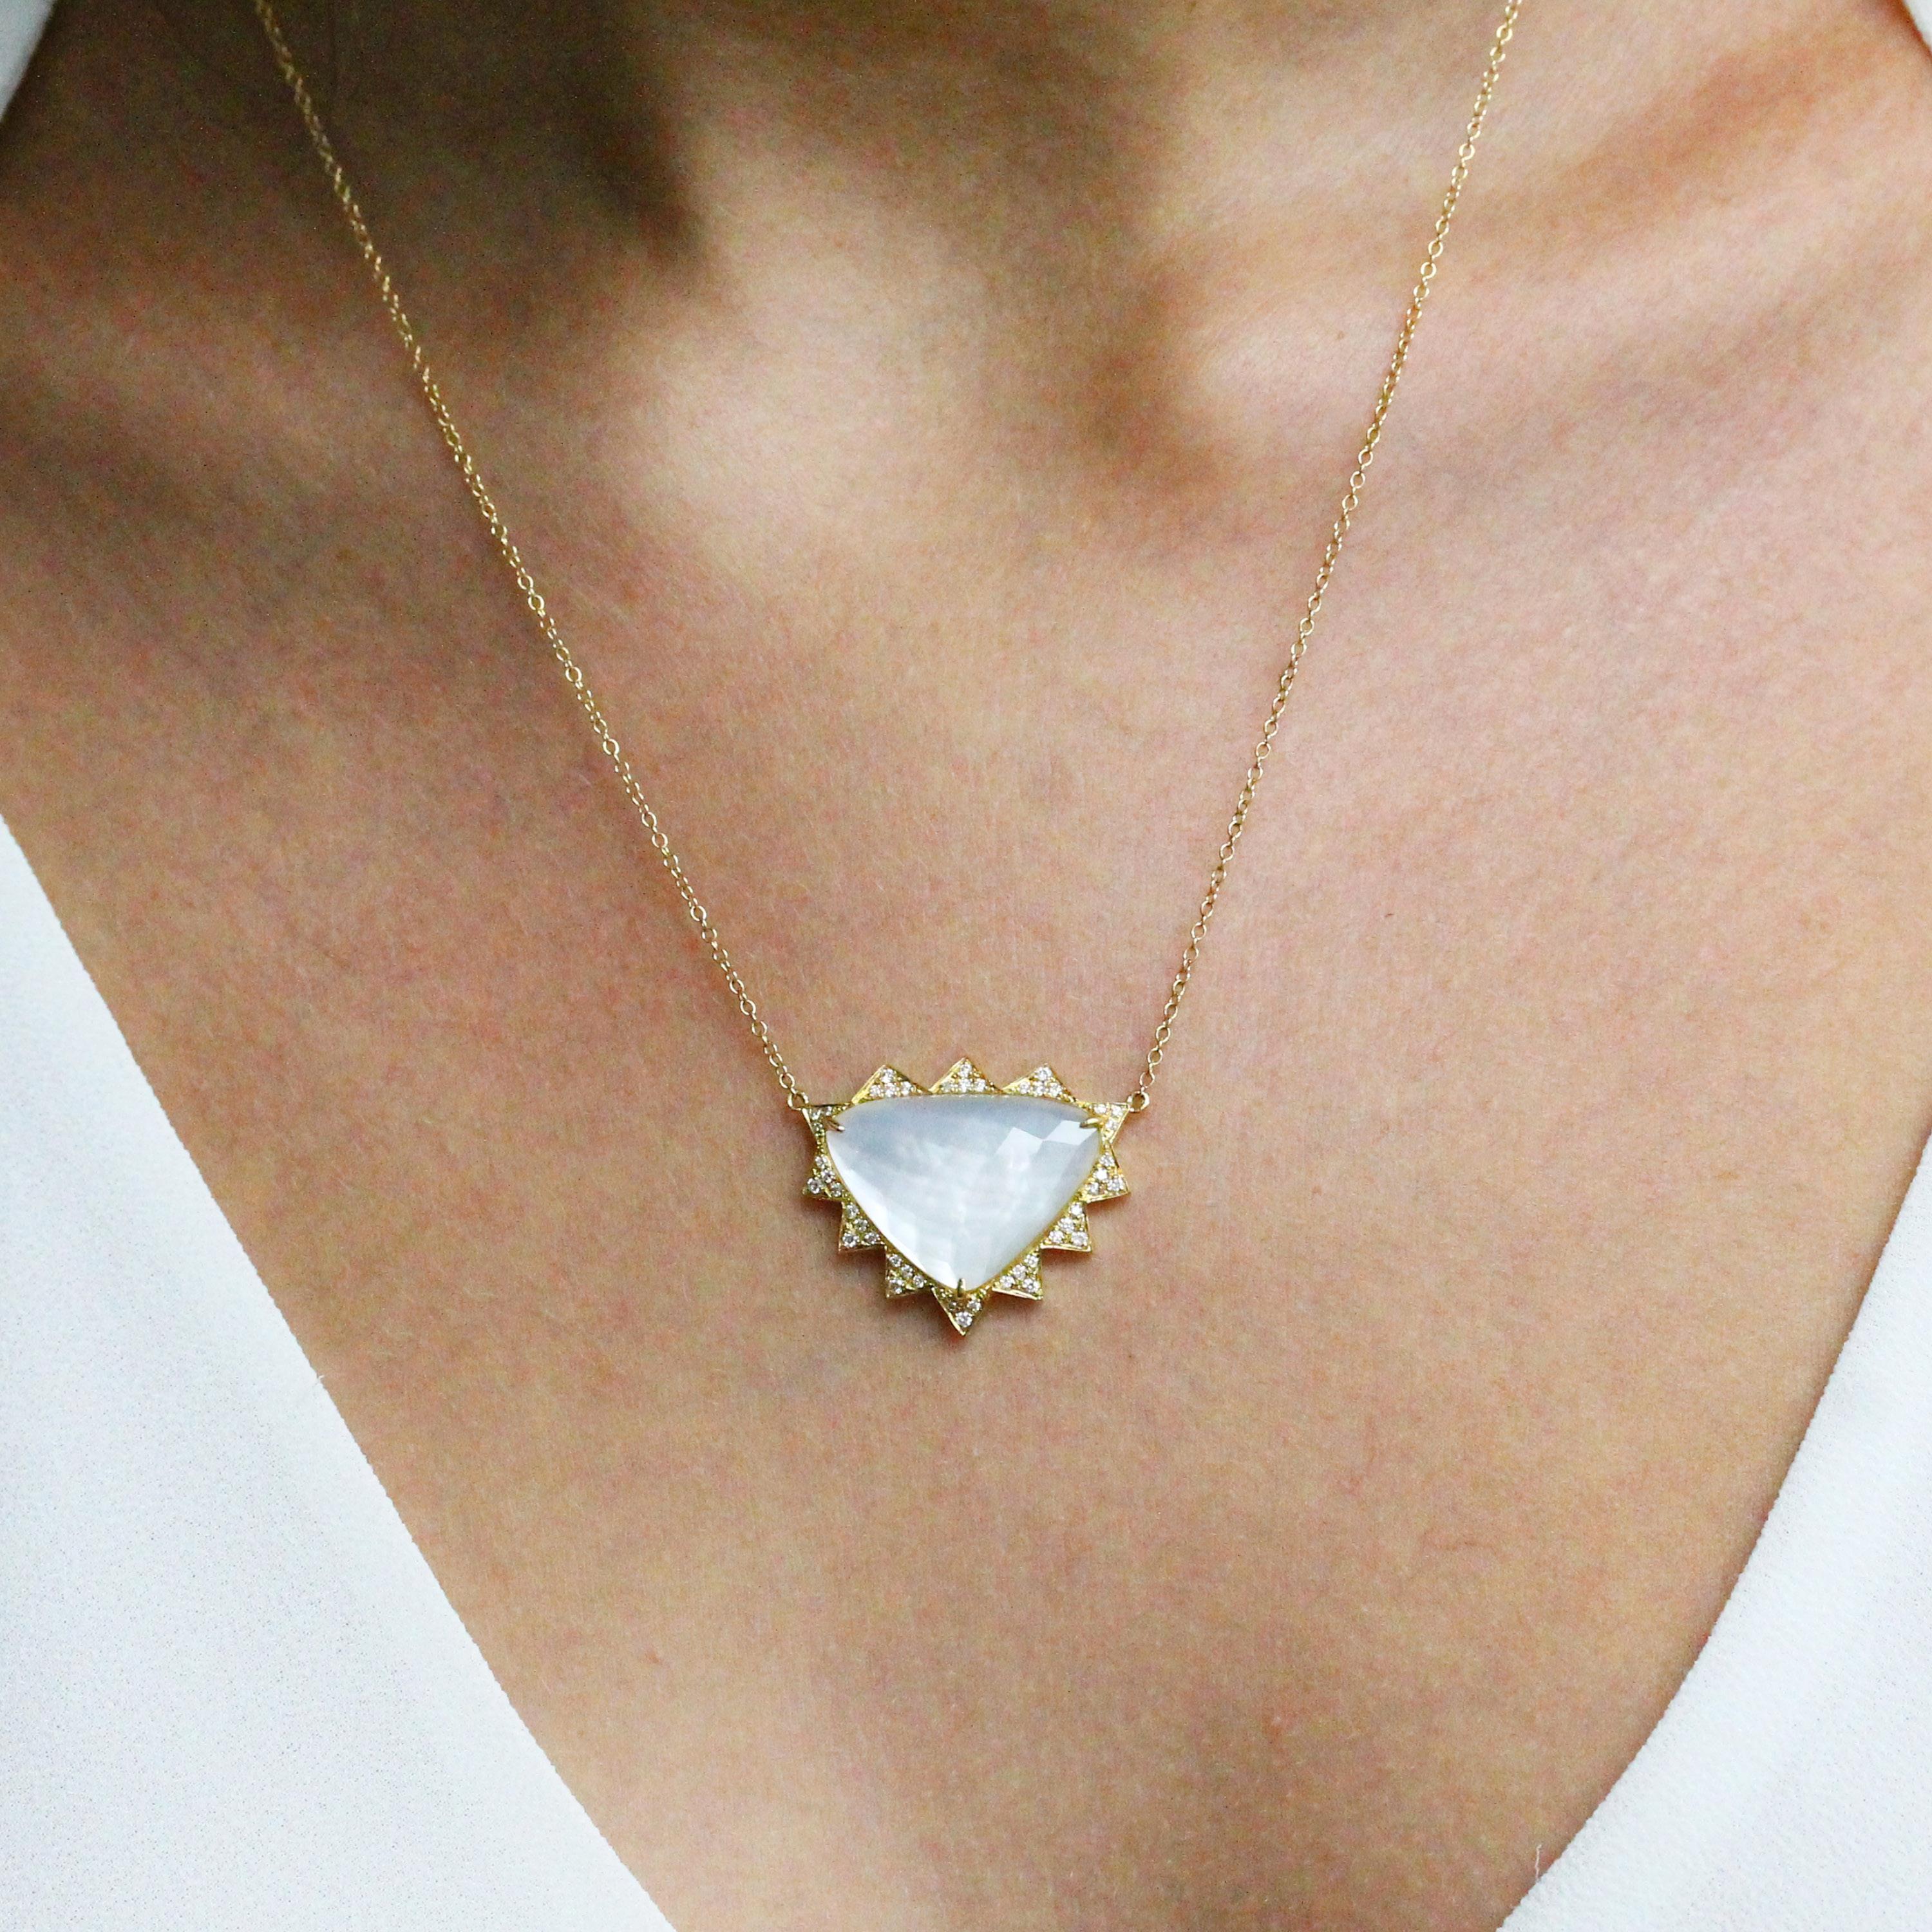 Collier de la collection White Orchid, comprenant un doublet de quartz blanc taillé en damier en forme de trillion, superposé à de la nacre blanche, et un halo de stations triangulaires de diamants pavés, en or jaune 18K. chaîne câblée de 18 pouces